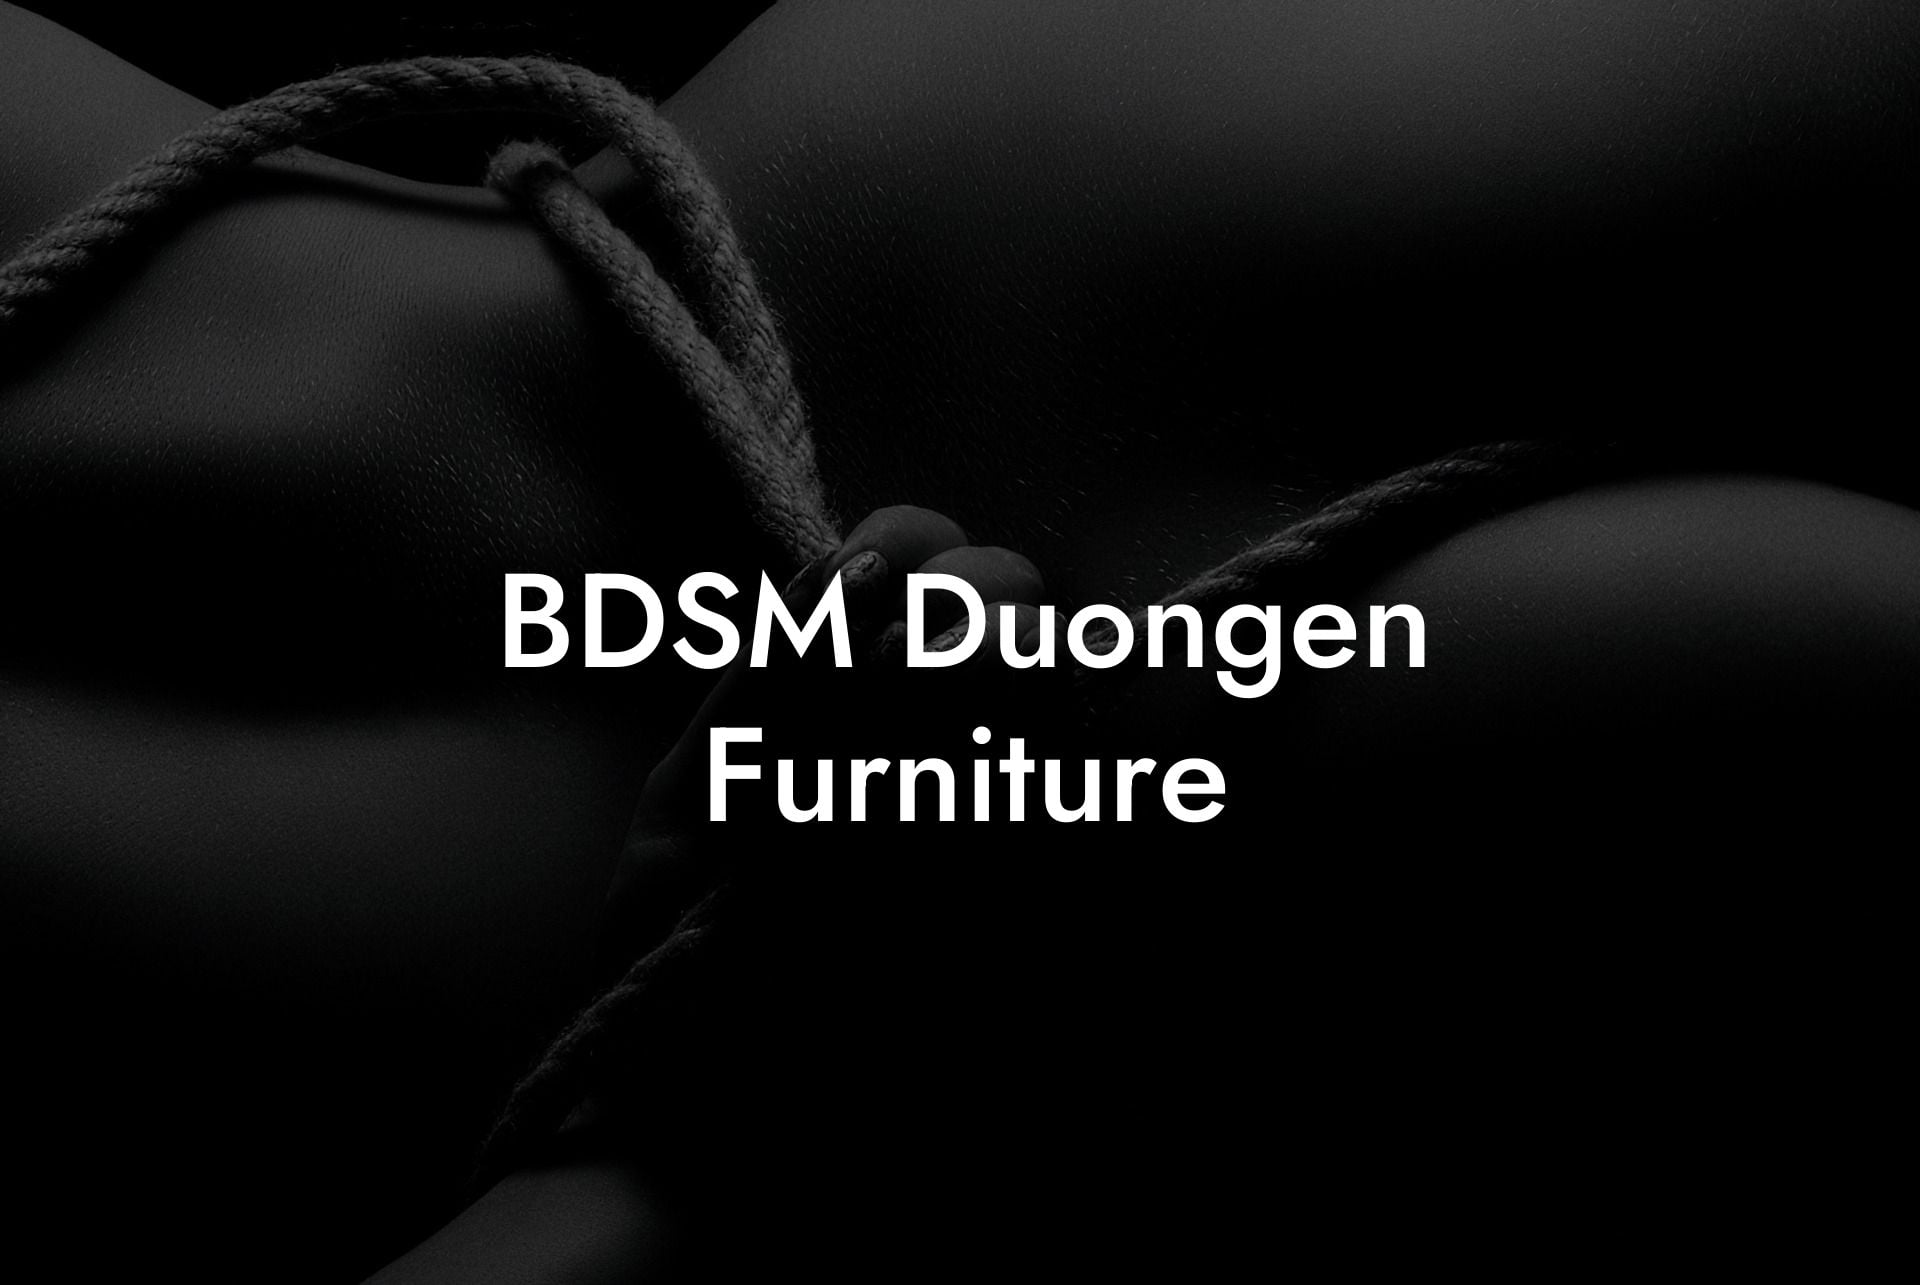 BDSM Duongen Furniture